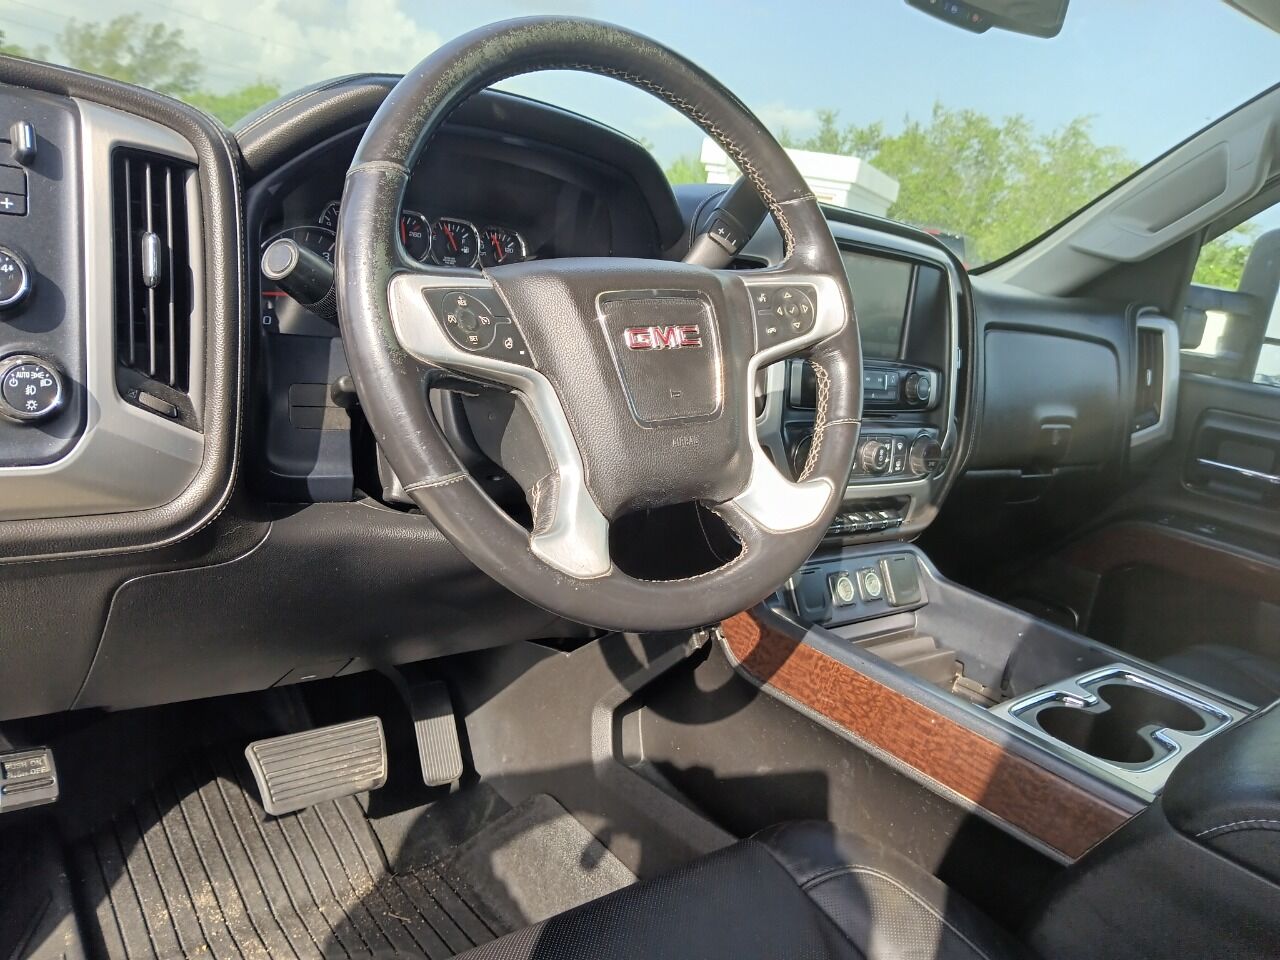 2015 GMC Sierra Pickup - $24,950